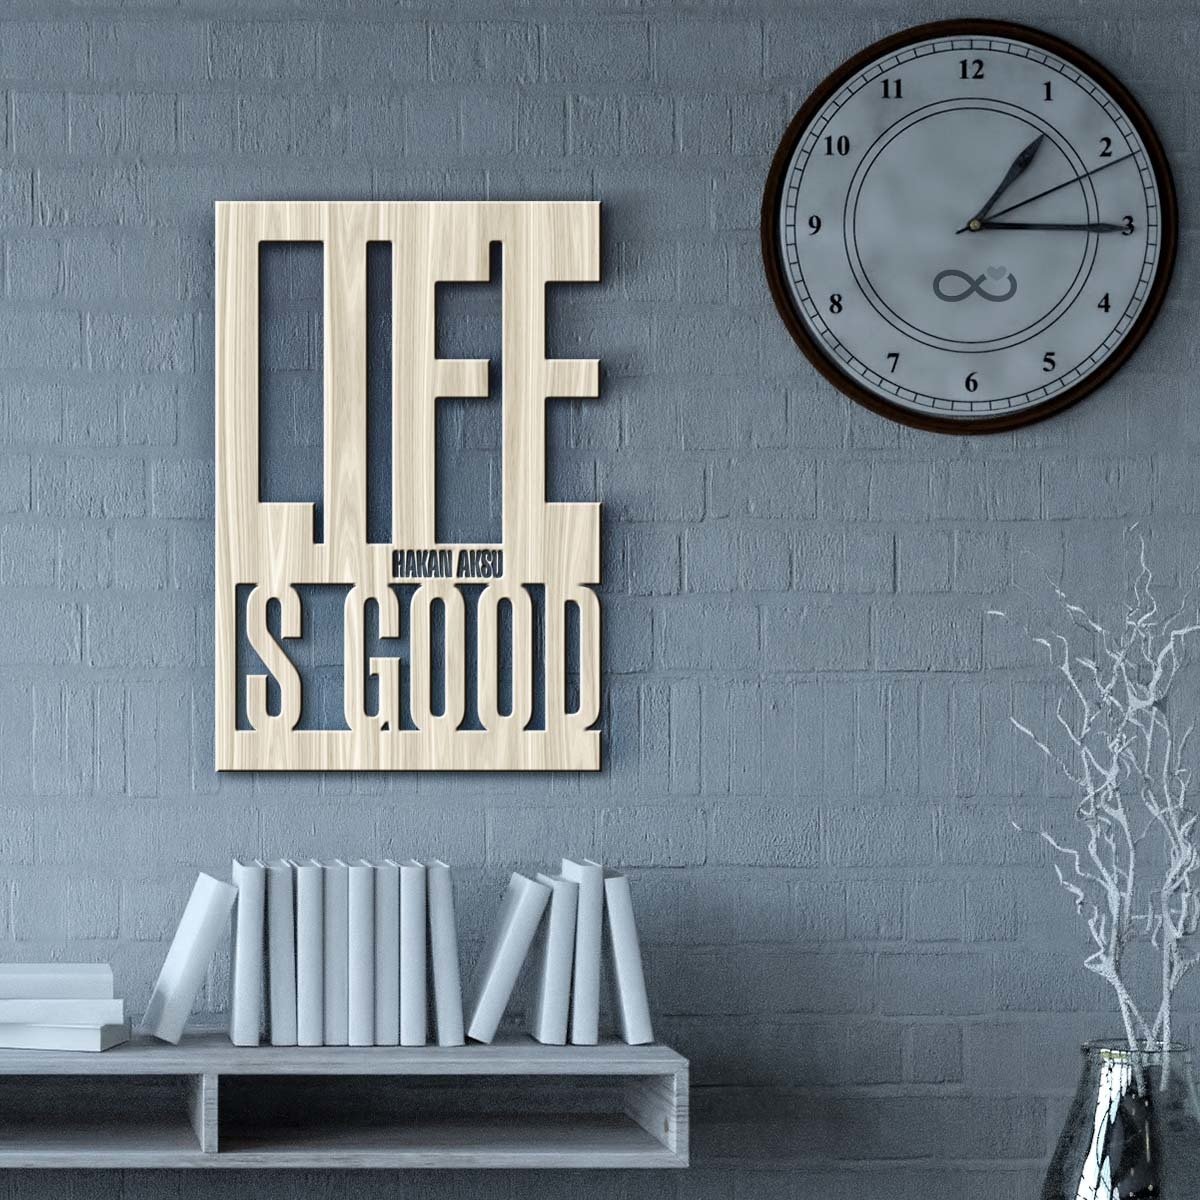 Kişiye Özel Life is Good Ahşap Duvar Yazısı - 2